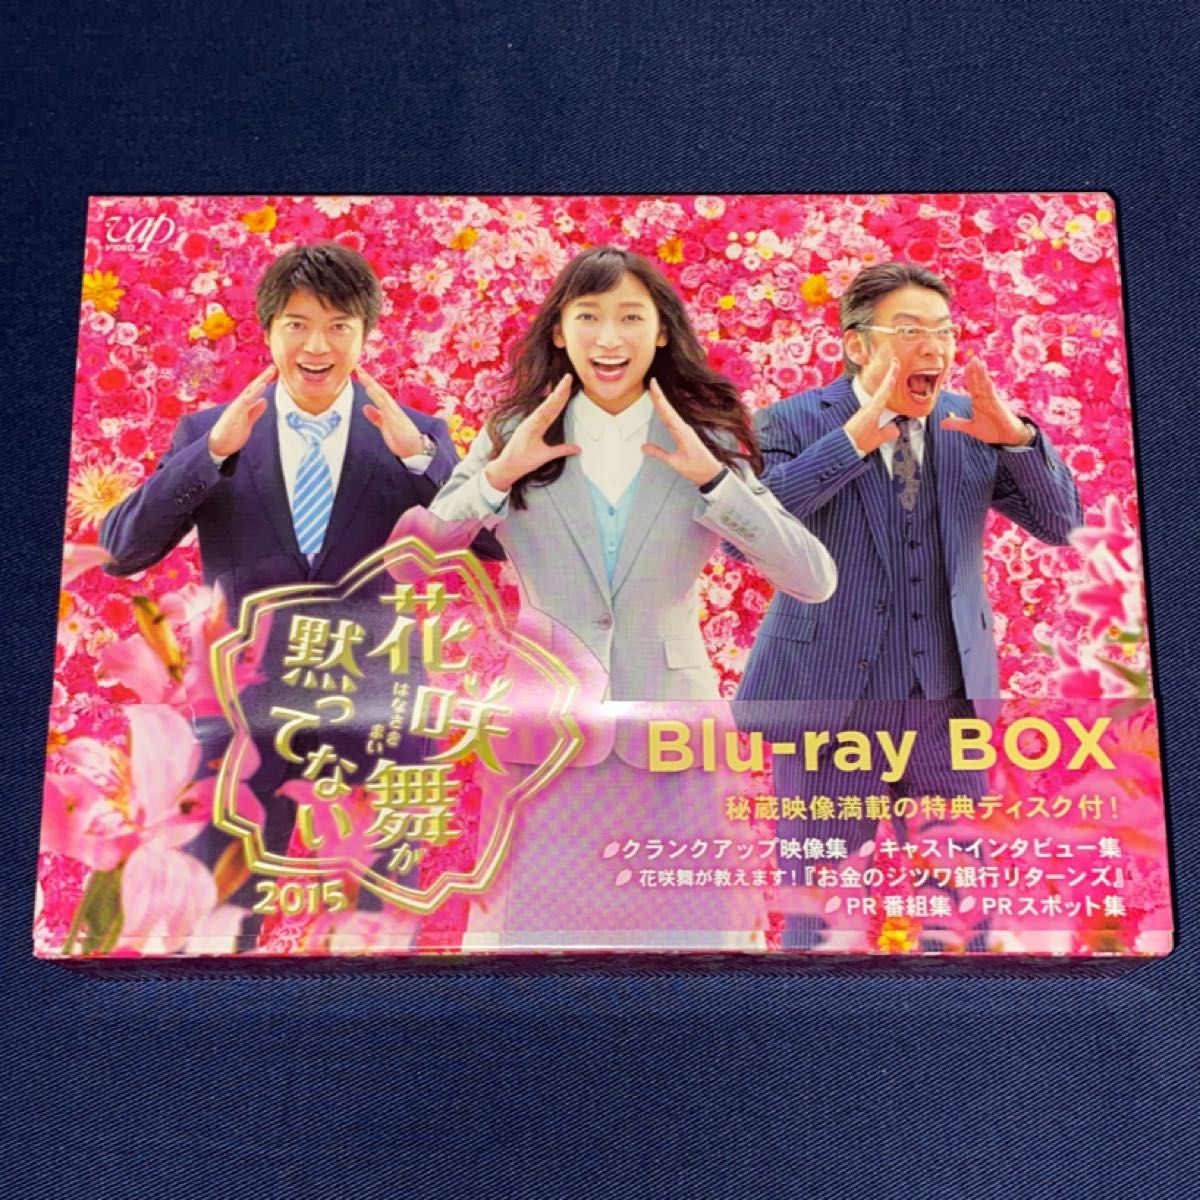 「花咲舞が黙ってない 2015」 Blu-ray BOX Blu-ray